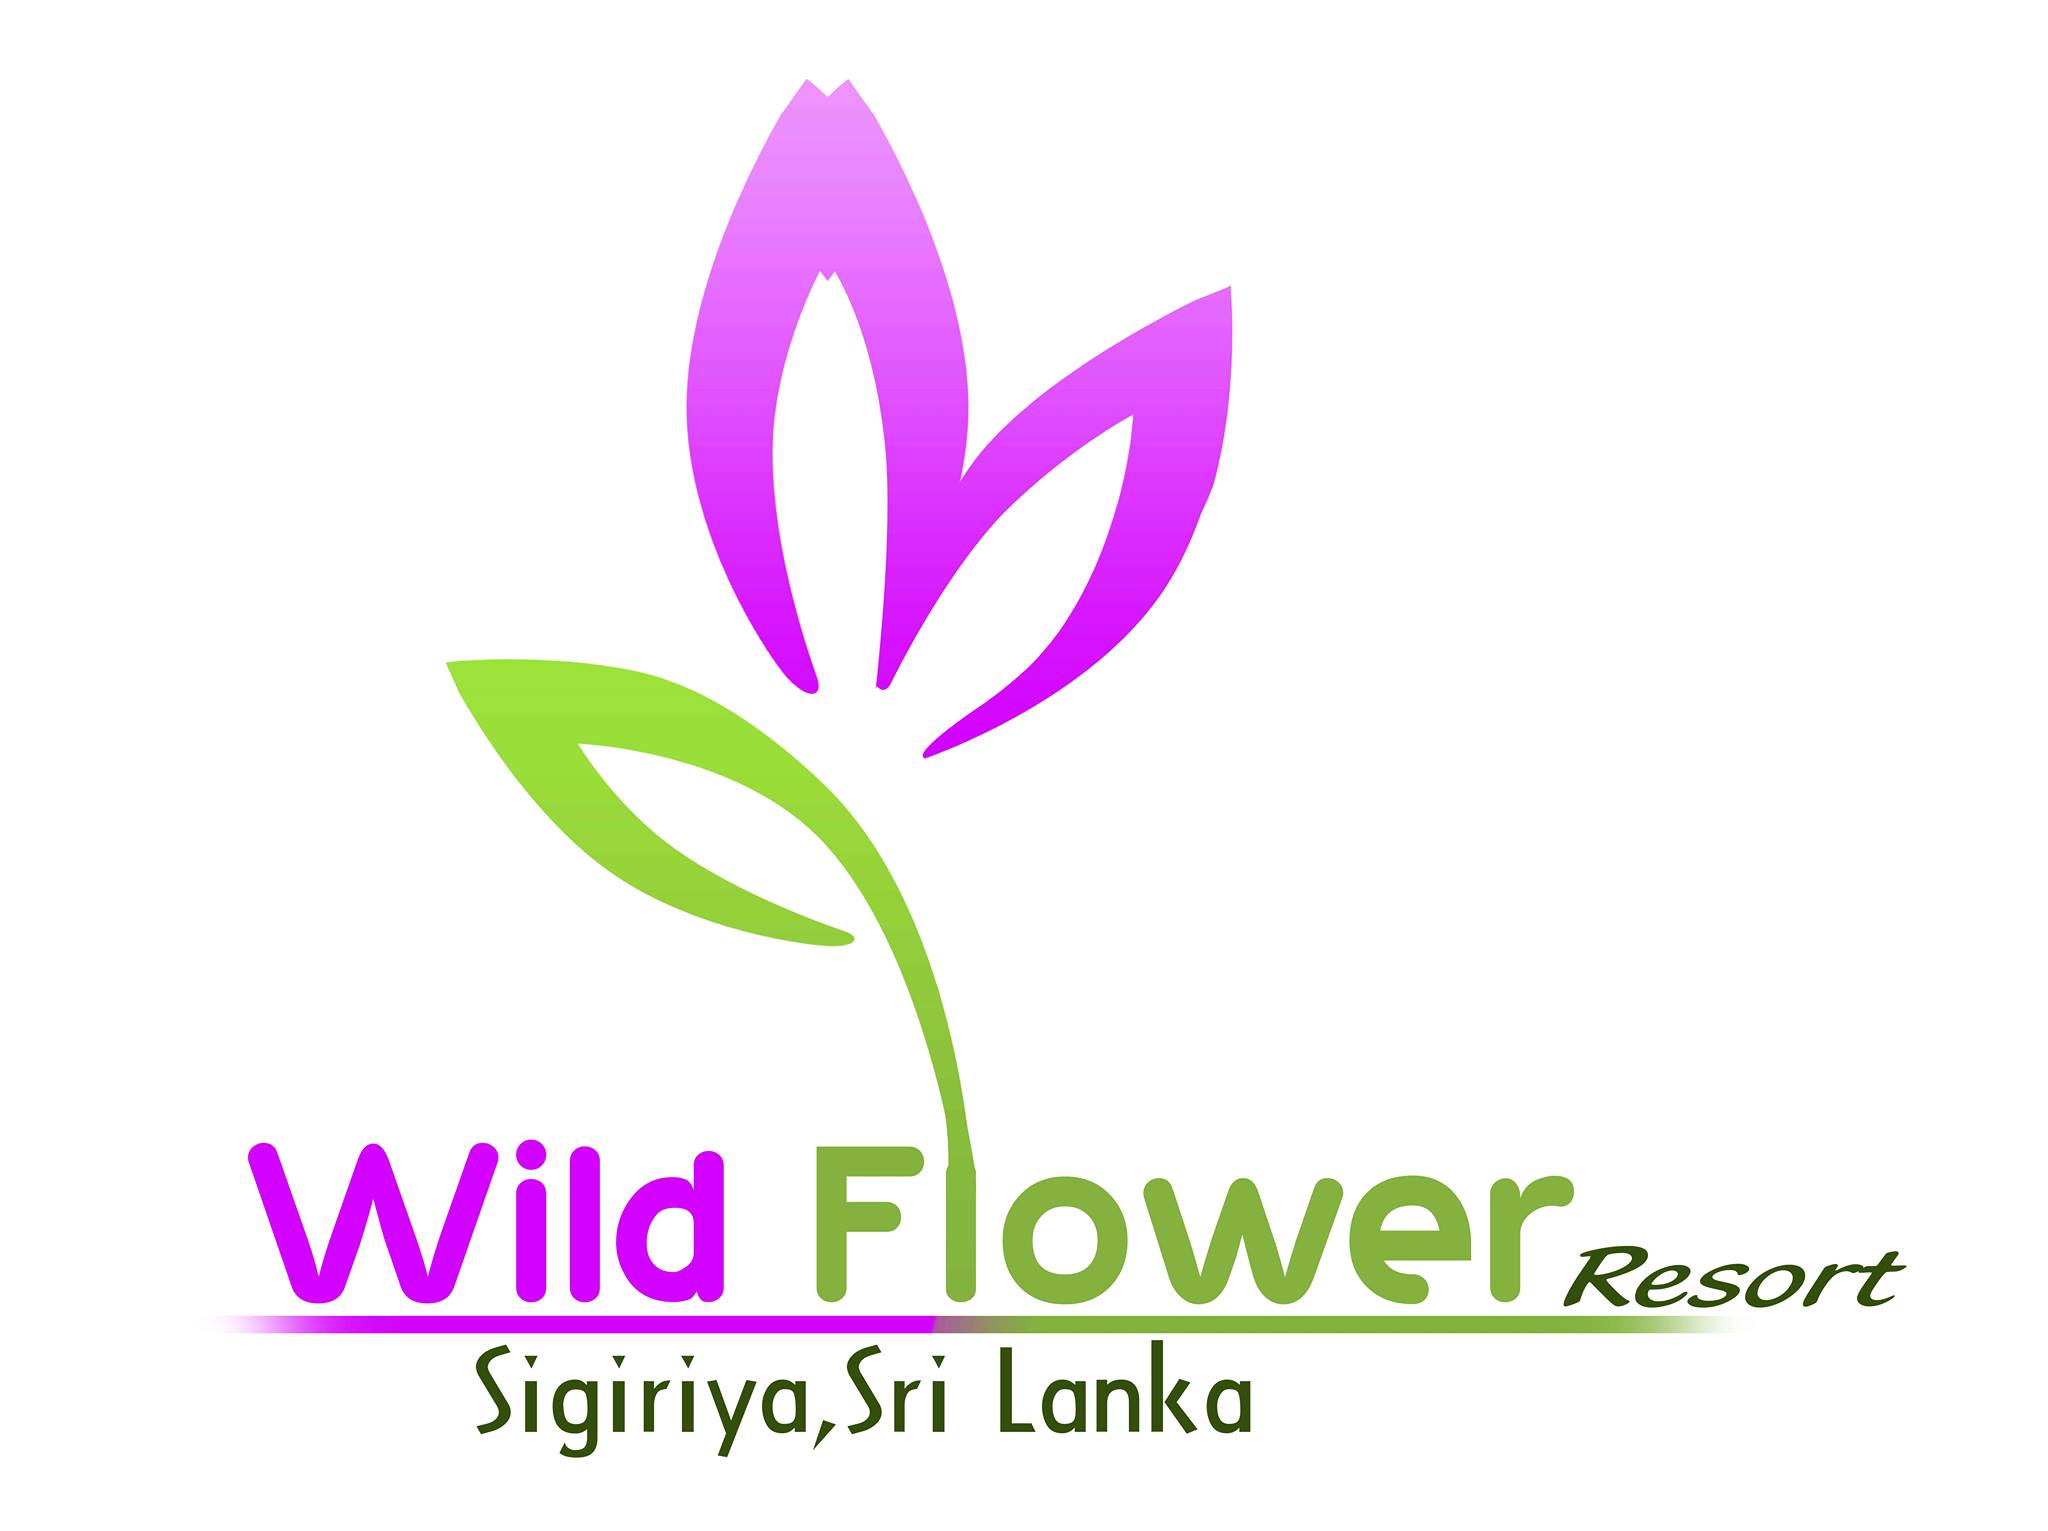 Wild Flower Resort